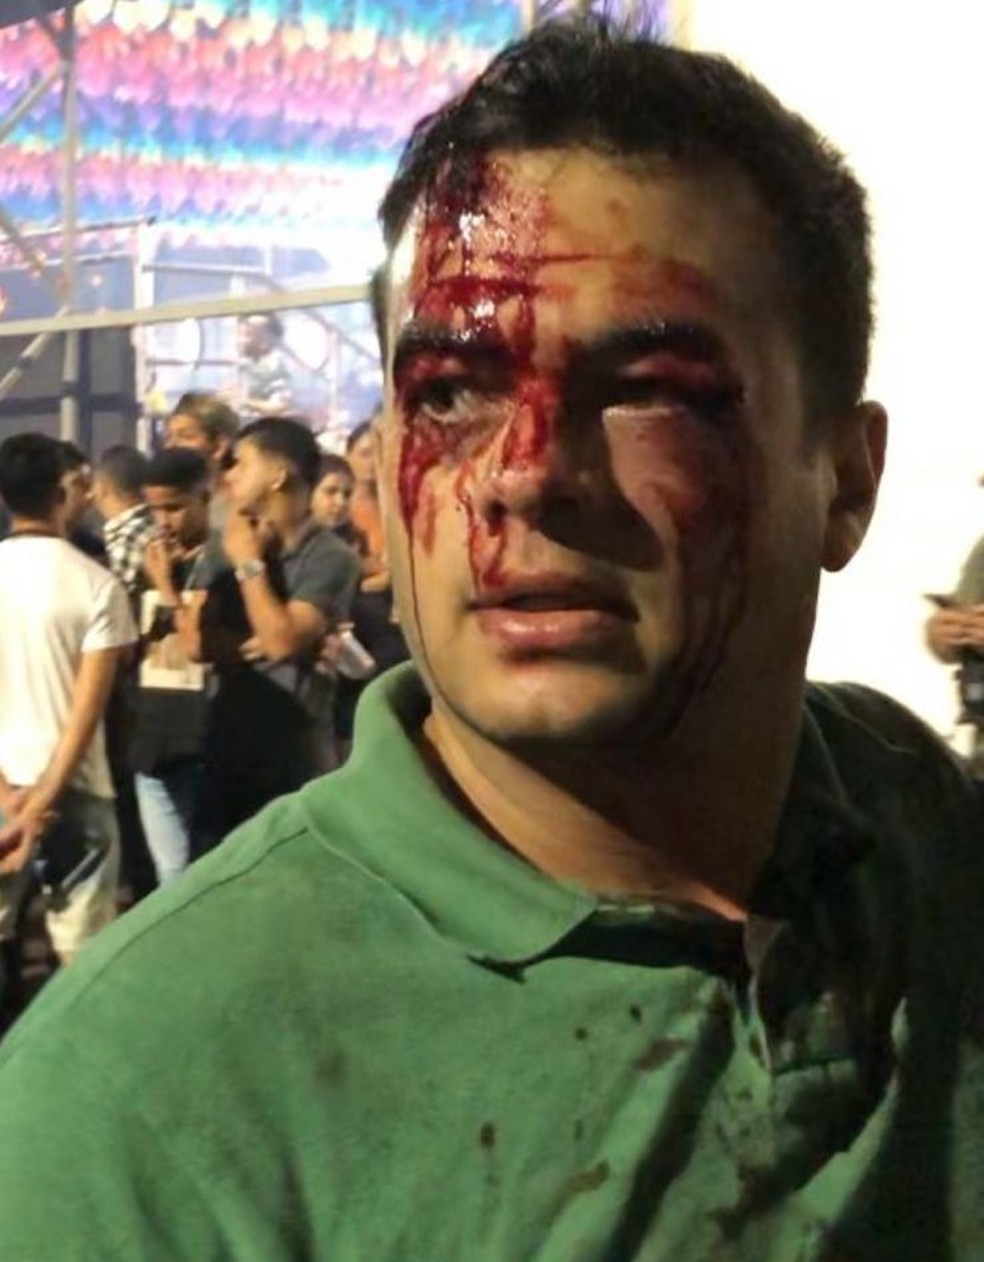 Murilo de Paula, de 32 anos, com o rosto sangrando no Pátio do Forró, em Caruaru — Foto: Reprodução/WhatsApp